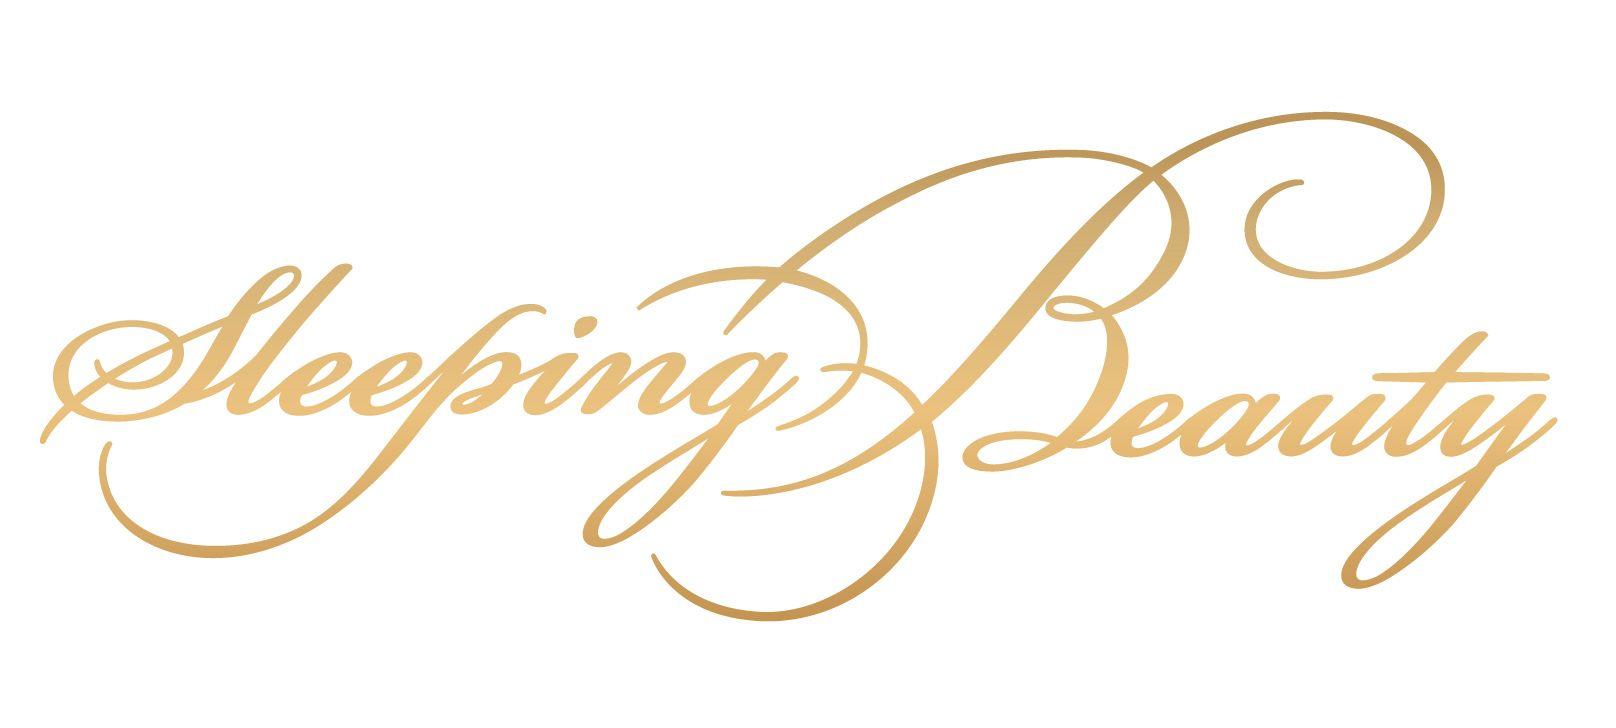 Sleeping Beauty Logo - Wordmark / logotype